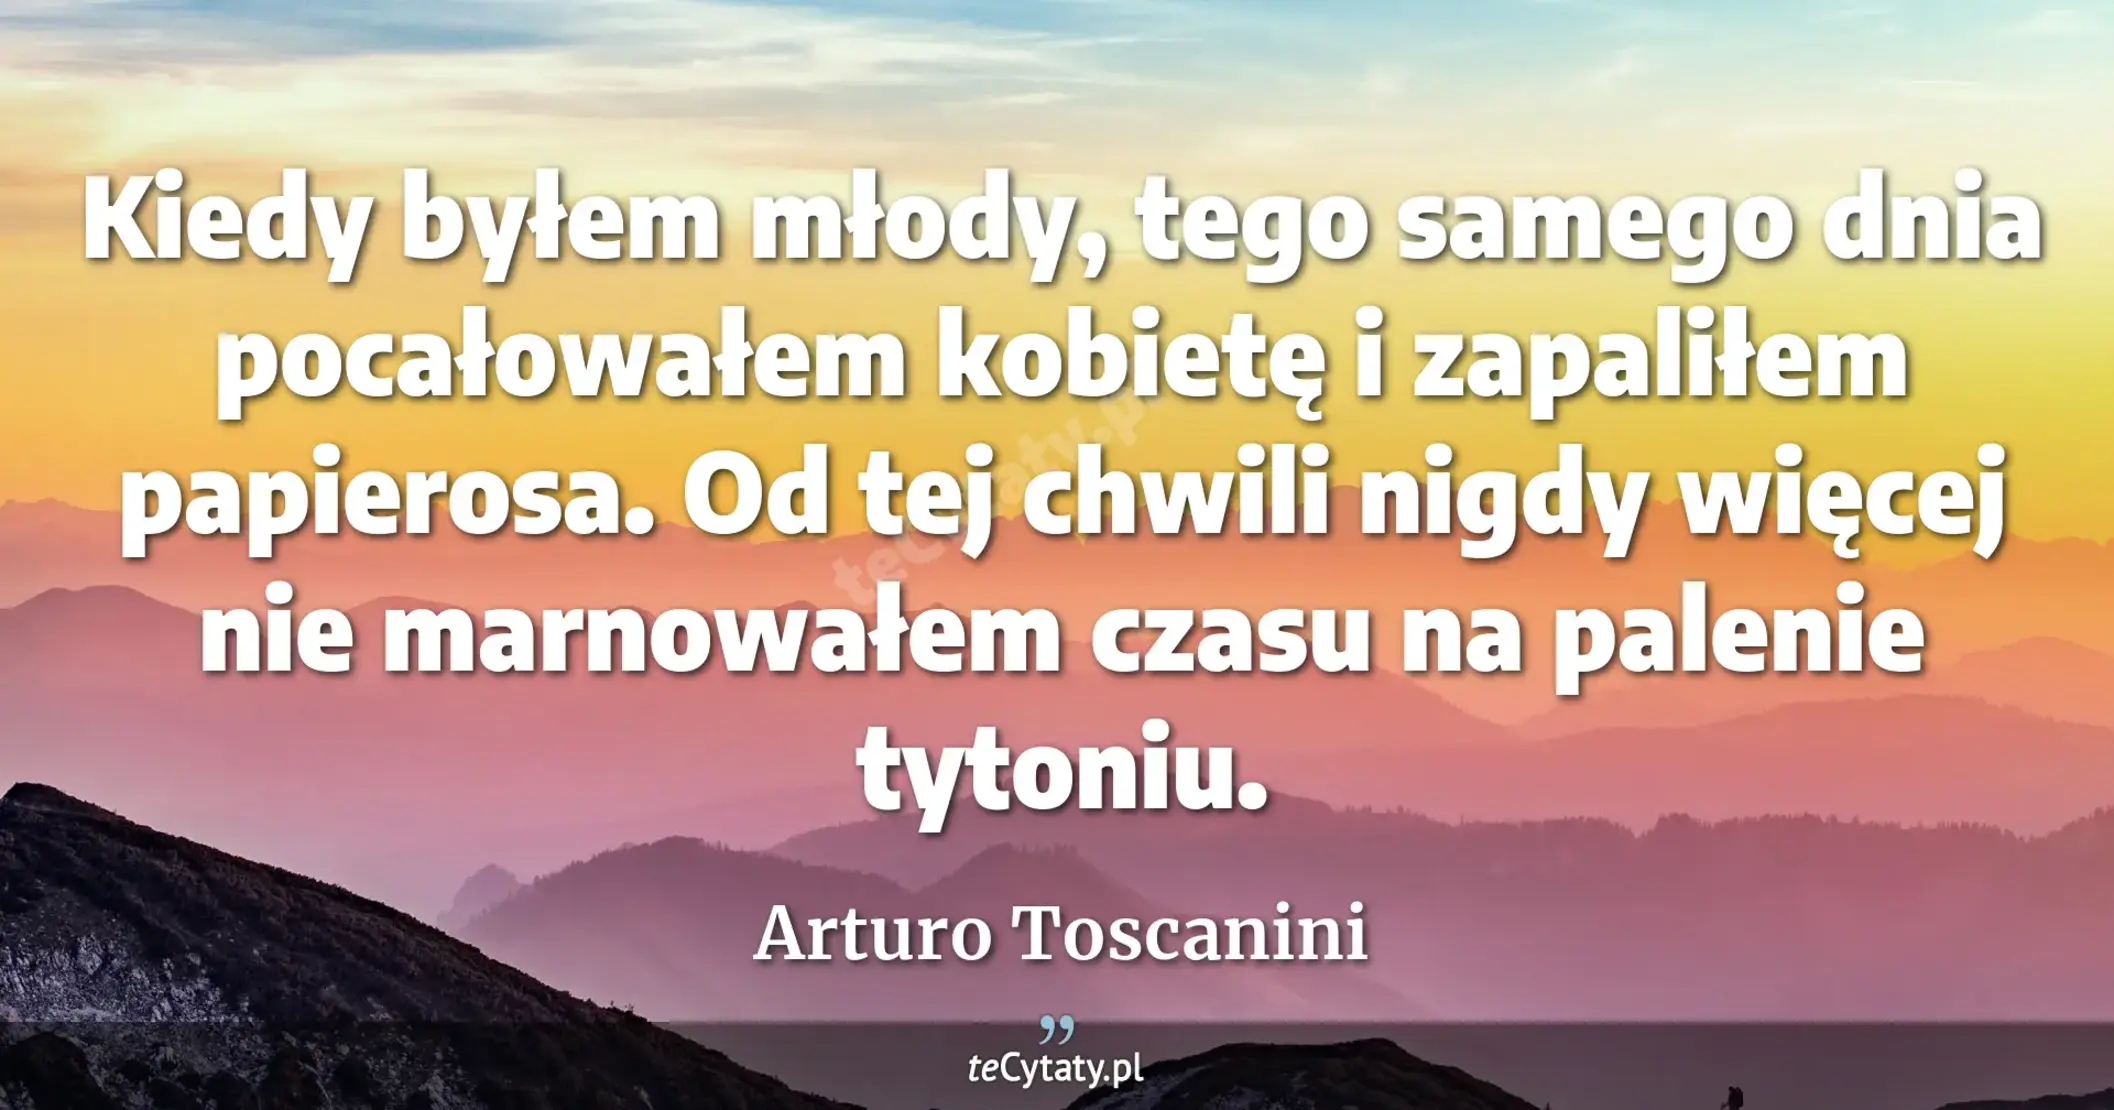 Kiedy byłem młody, tego samego dnia pocałowałem kobietę i zapaliłem papierosa. Od tej chwili nigdy więcej nie marnowałem czasu na palenie tytoniu. - Arturo Toscanini